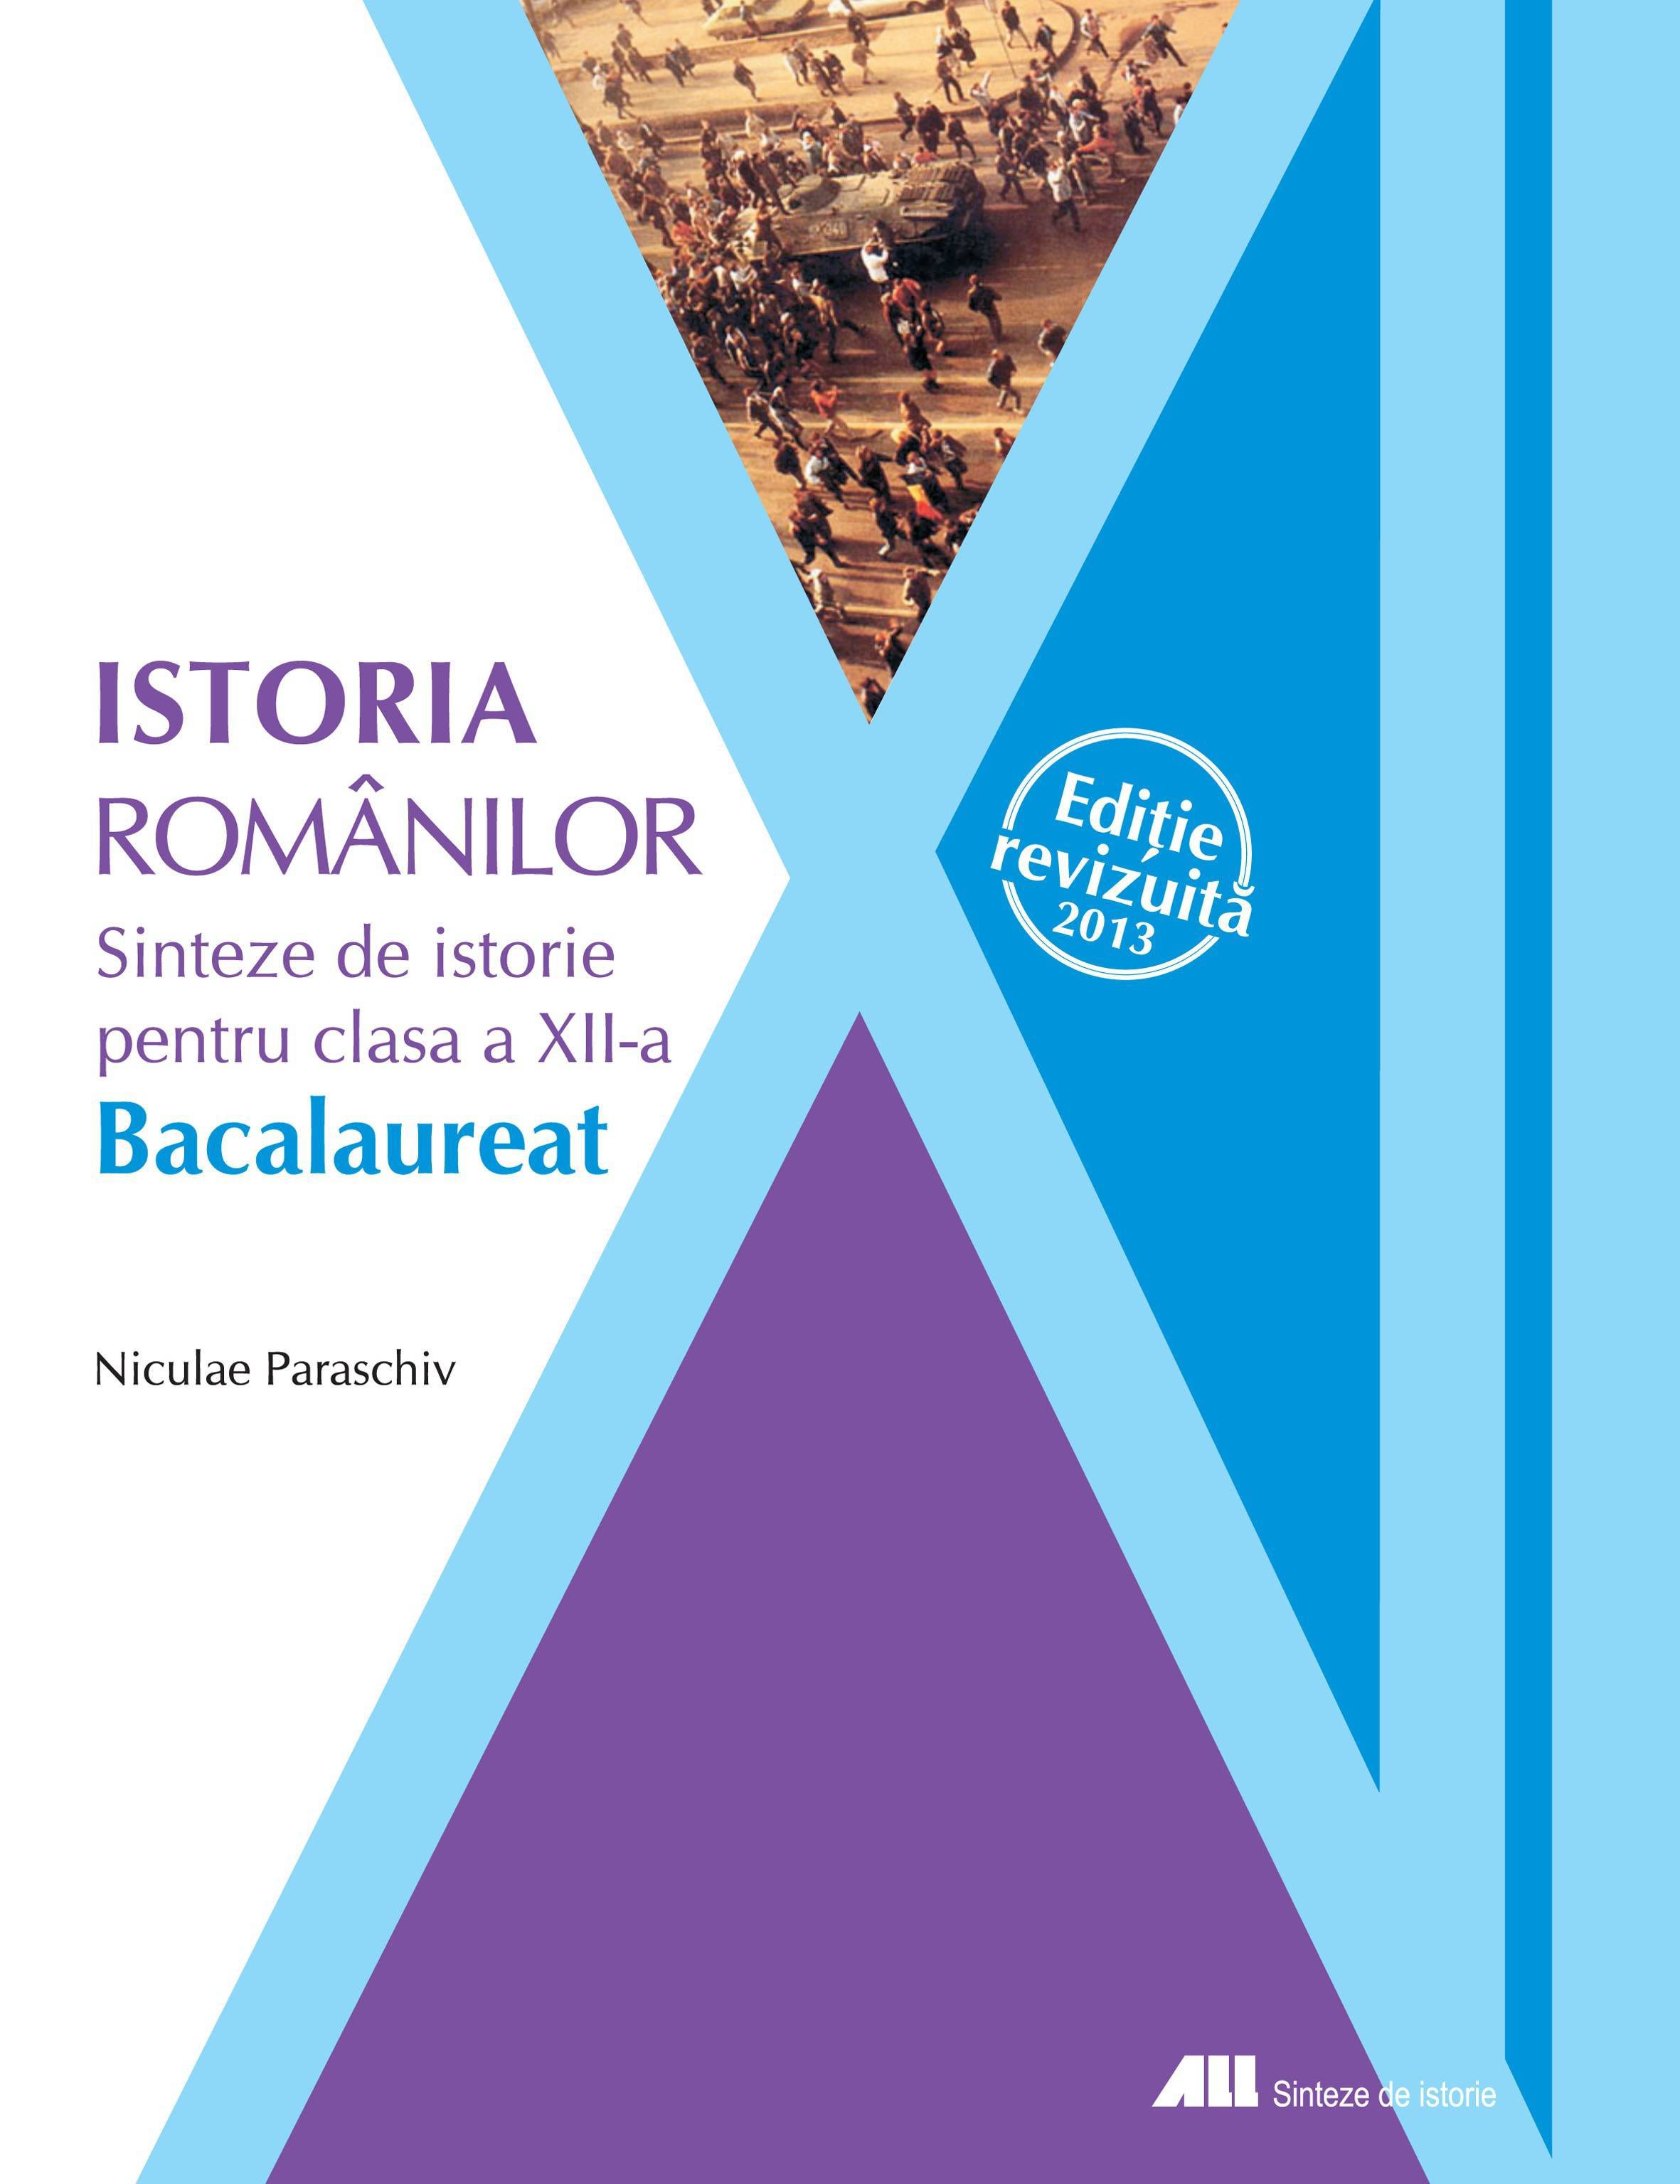 Sinteze de istorie clasa a 12-a istoria romanilor - Niculae Paraschiv